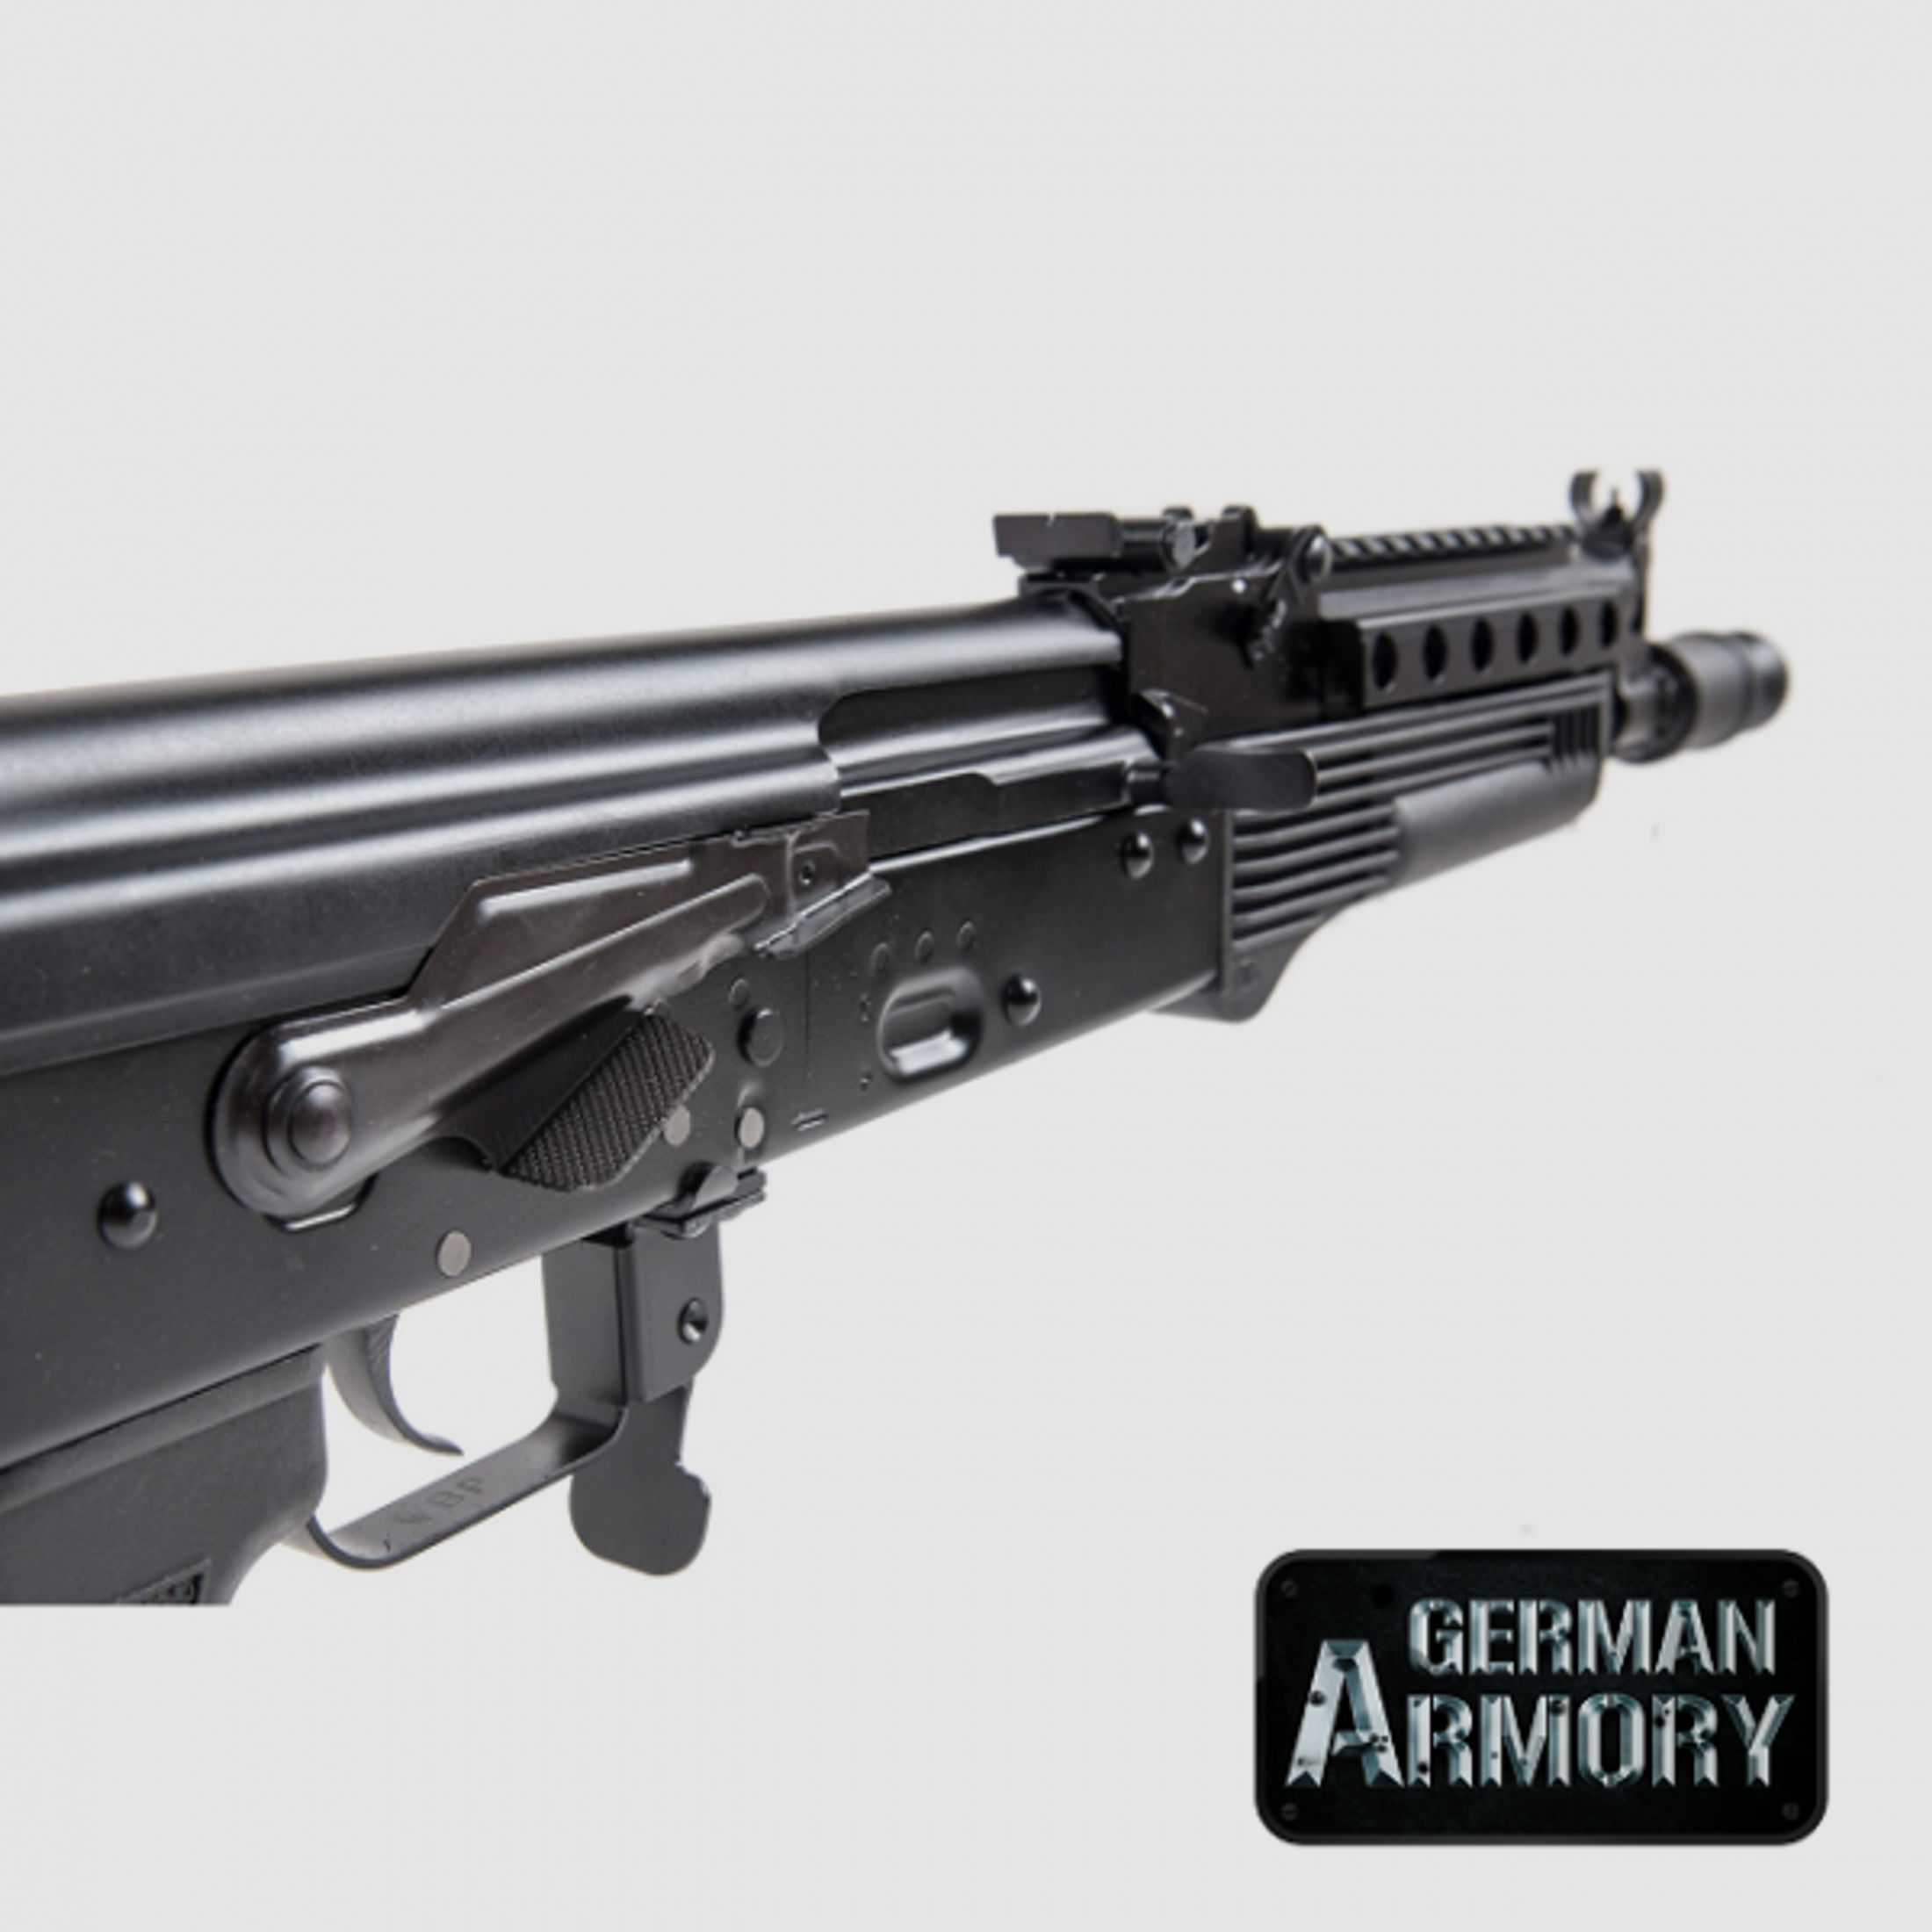 WBP erweiterter Sicherungshebel für AKM AK 47 74 Cugir Saiga Vepr SDM Zastava Arsenal Tuning